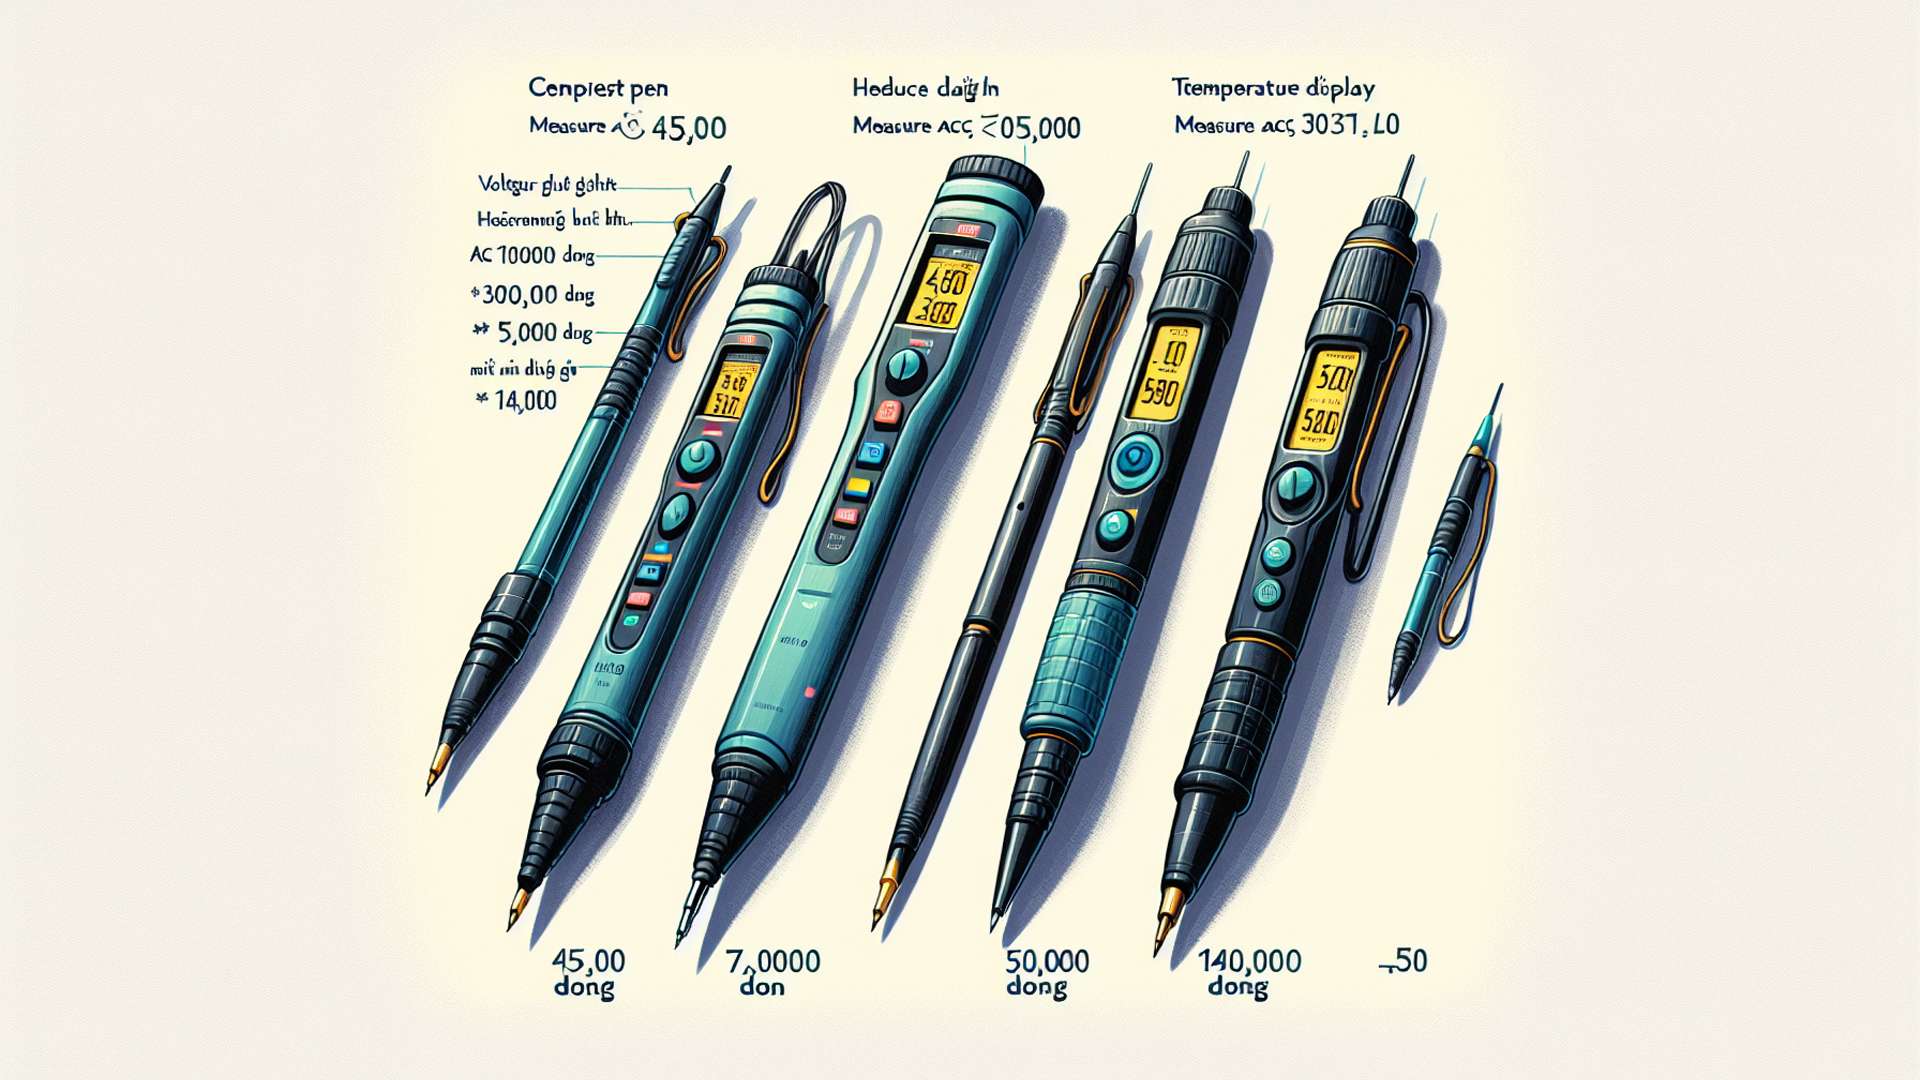 Đánh giá 3 cây bút thử điện Kingblue: So sánh tính năng và ưu điểm